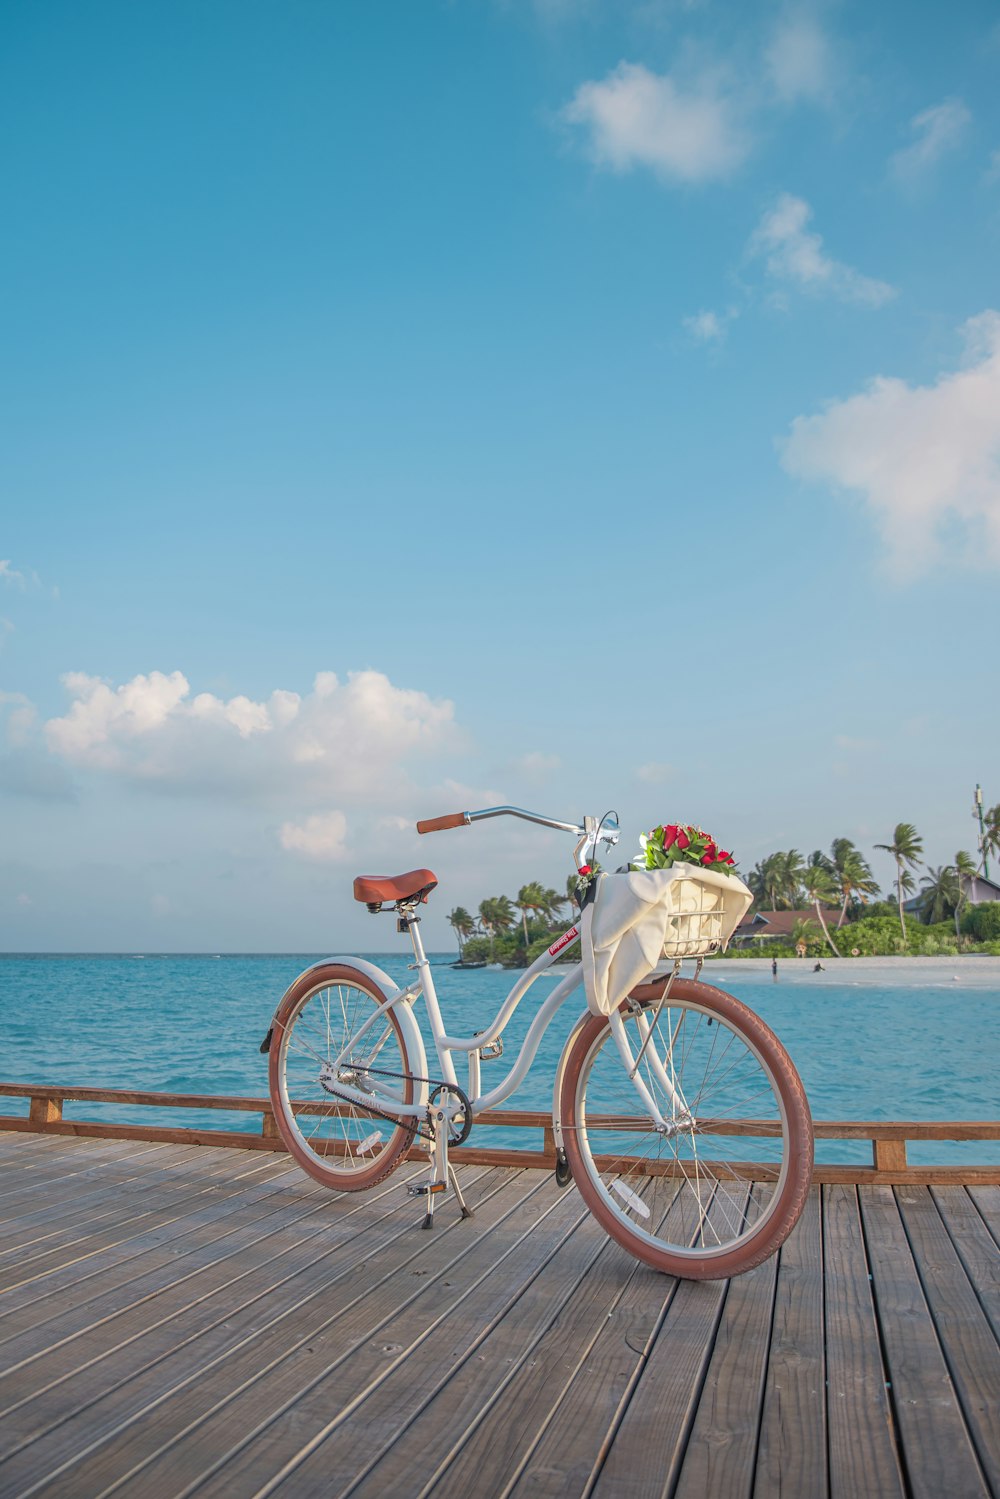 vélo blanc sur le quai en bois brun pendant la journée